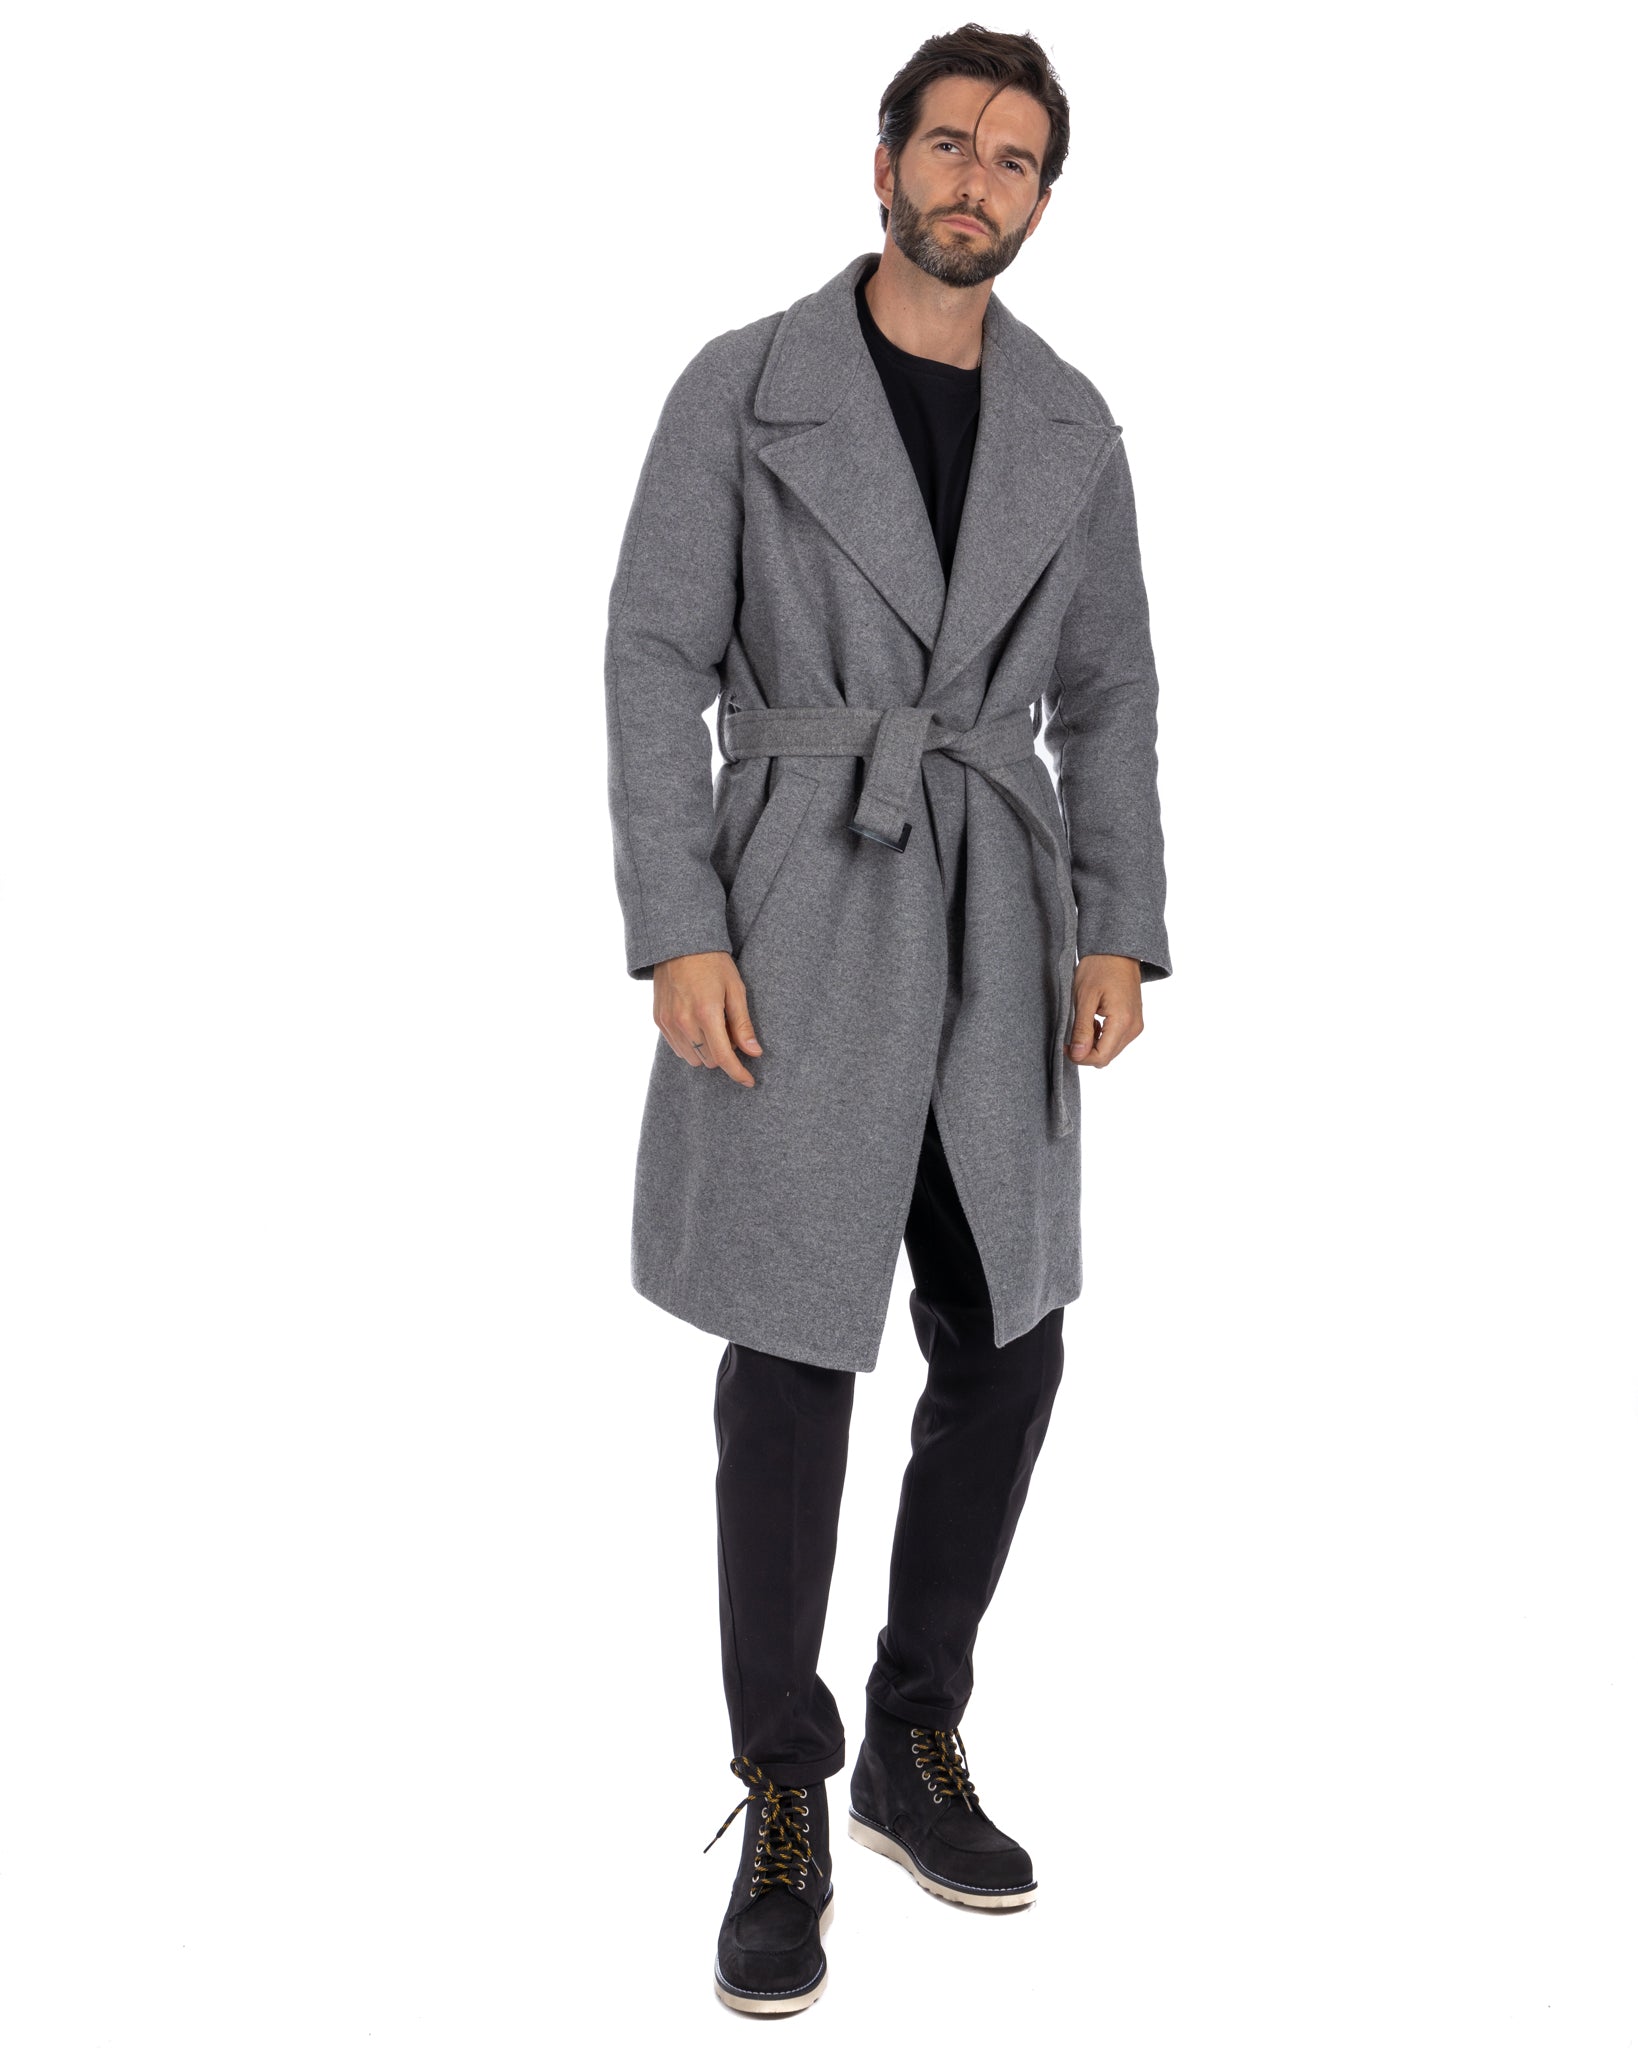 Claude - cappotto vestaglia grigio chiaro